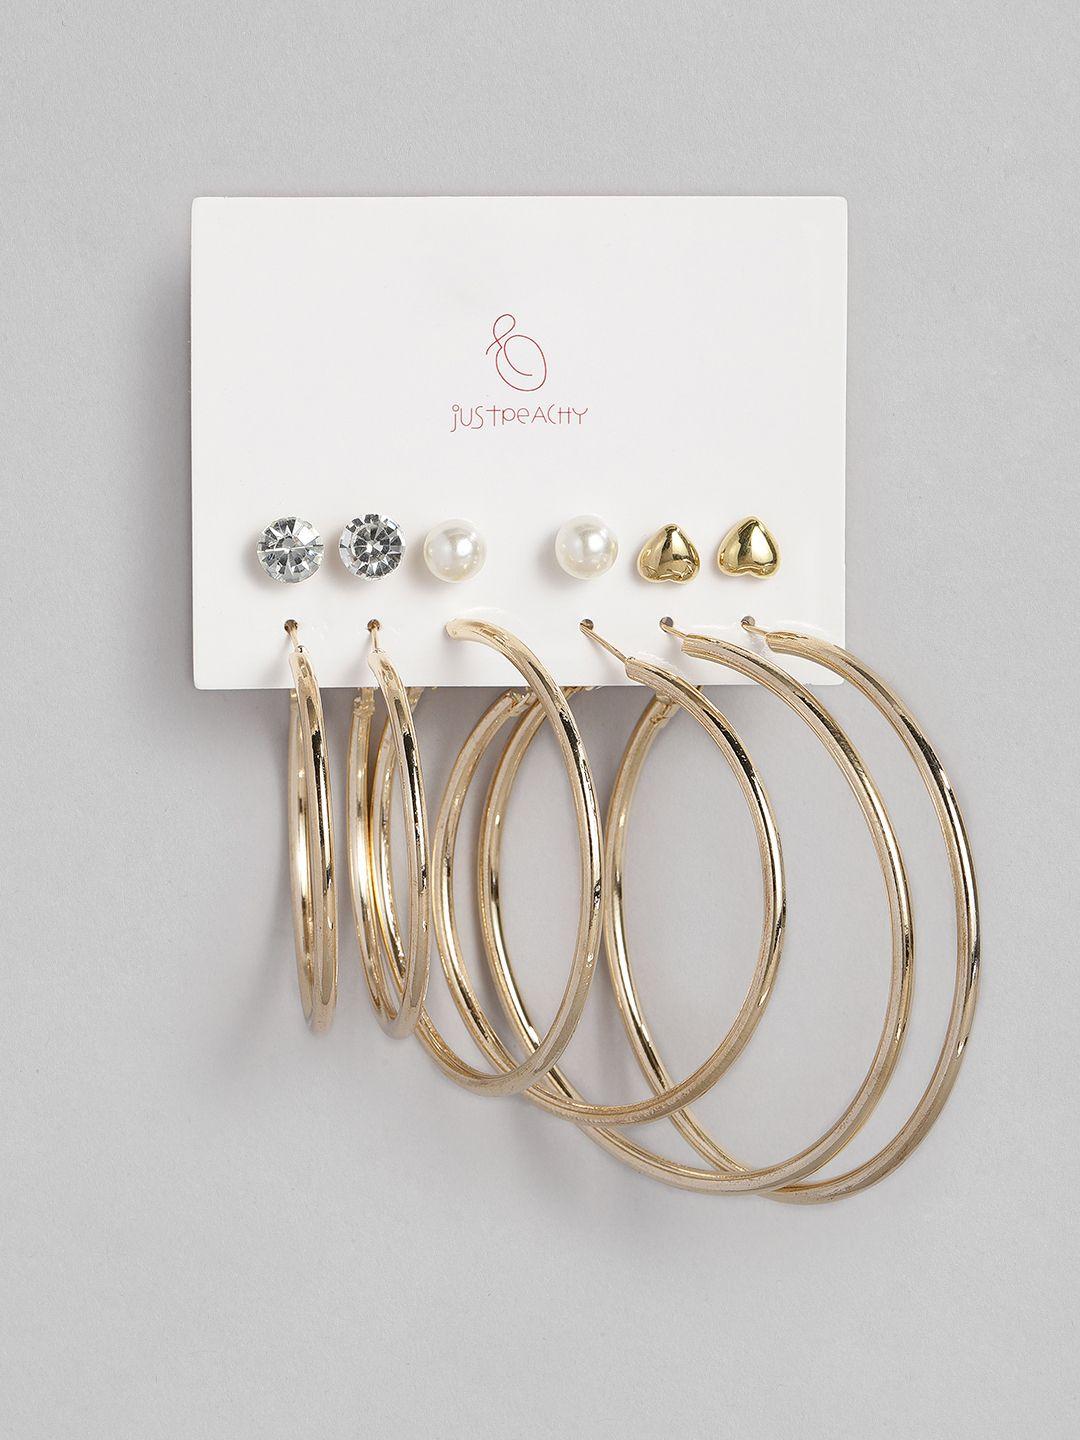 justpeachy set of 6 earrings